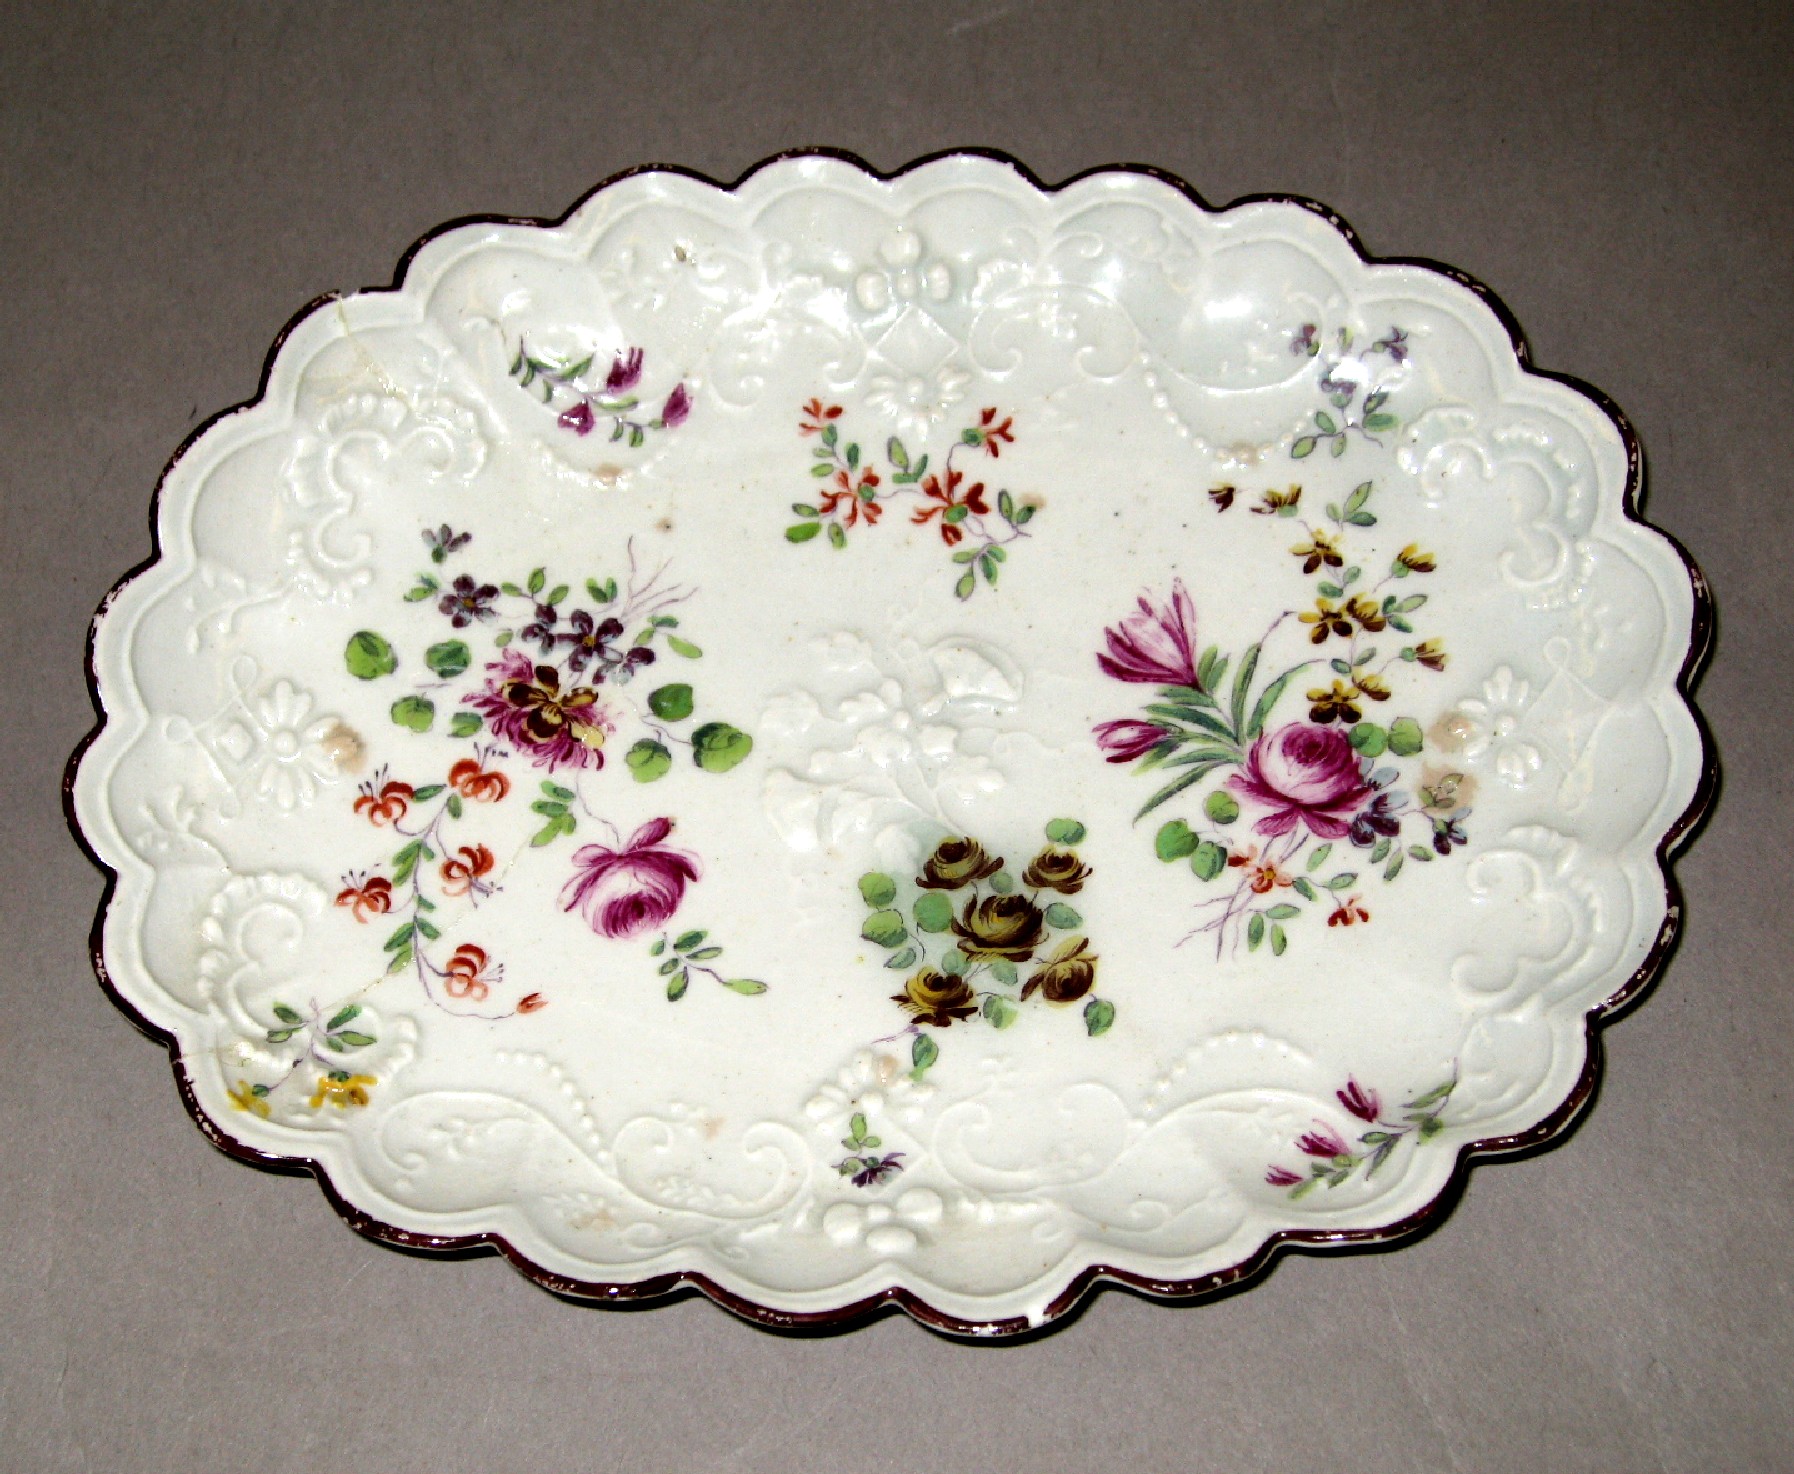 2003.0013.124 Derby soft-paste porcelain dish